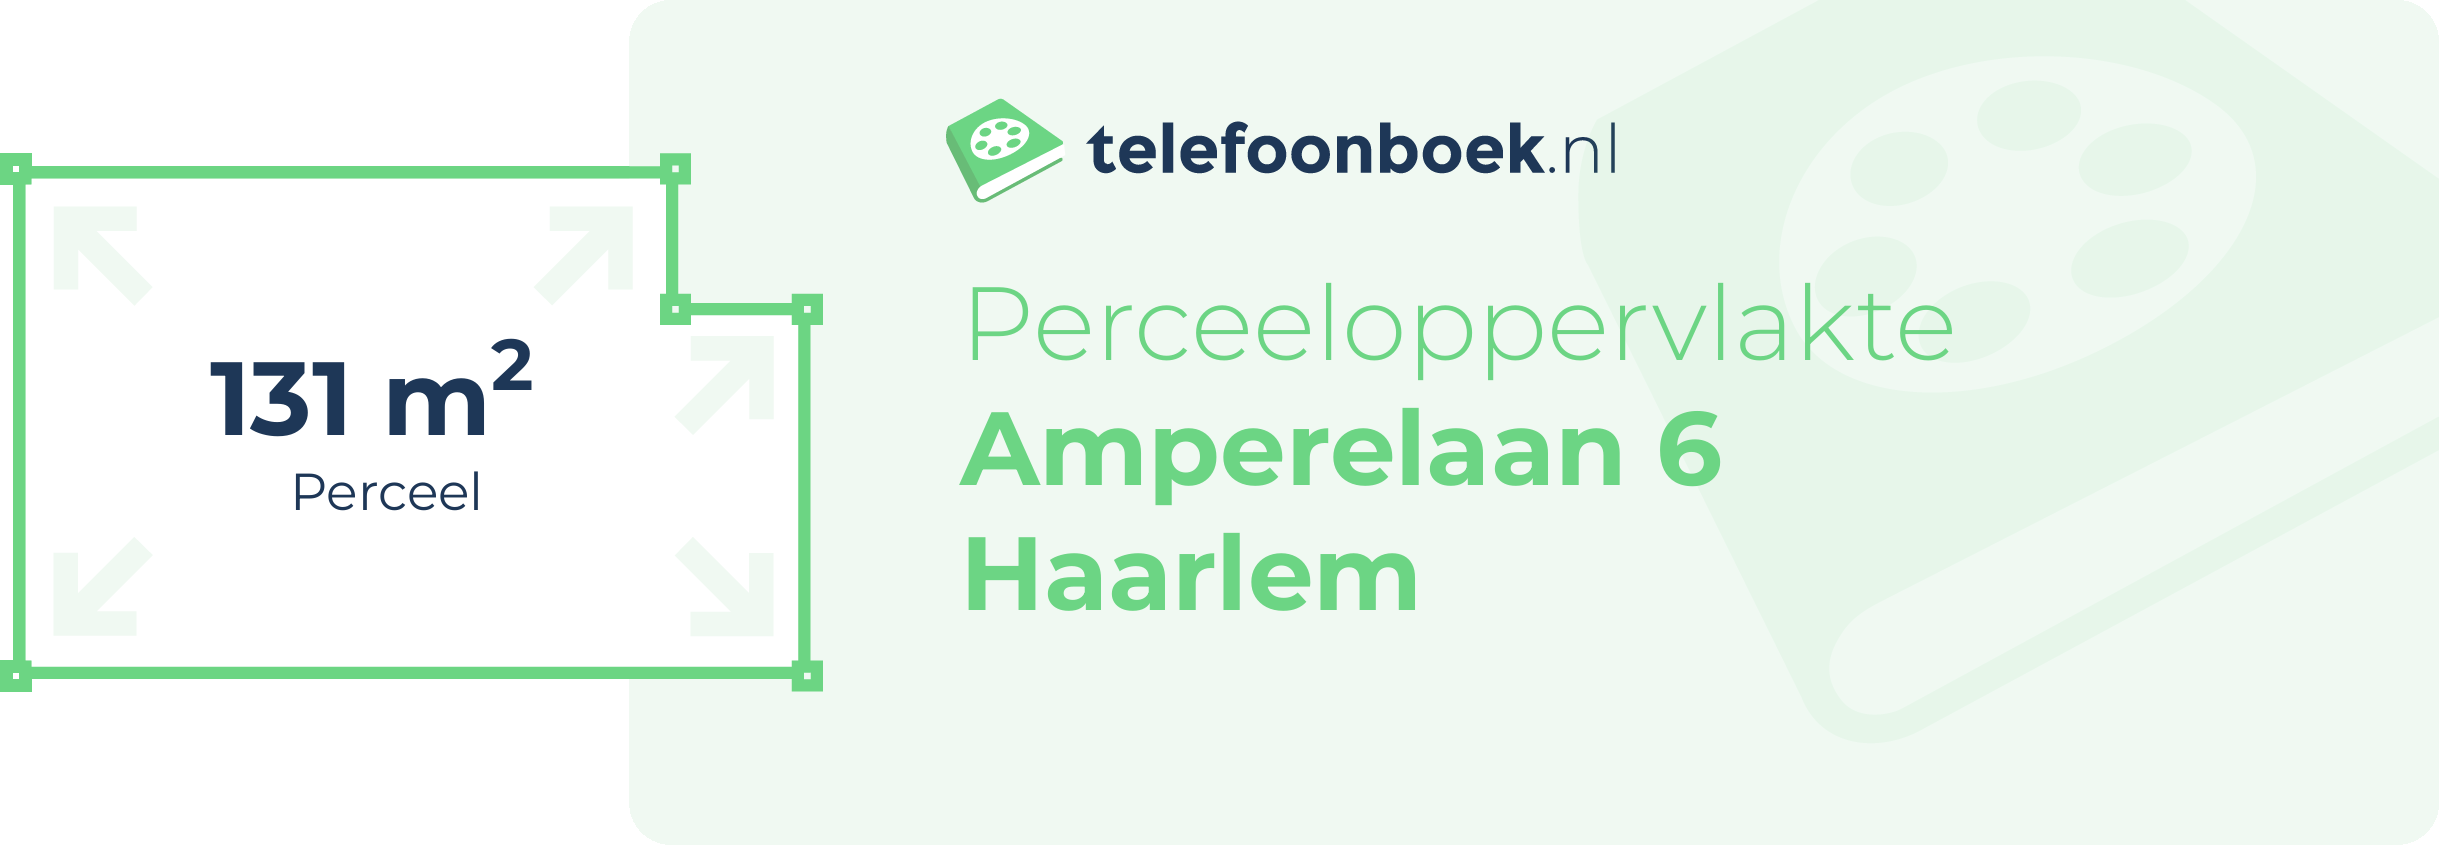 Perceeloppervlakte Amperelaan 6 Haarlem